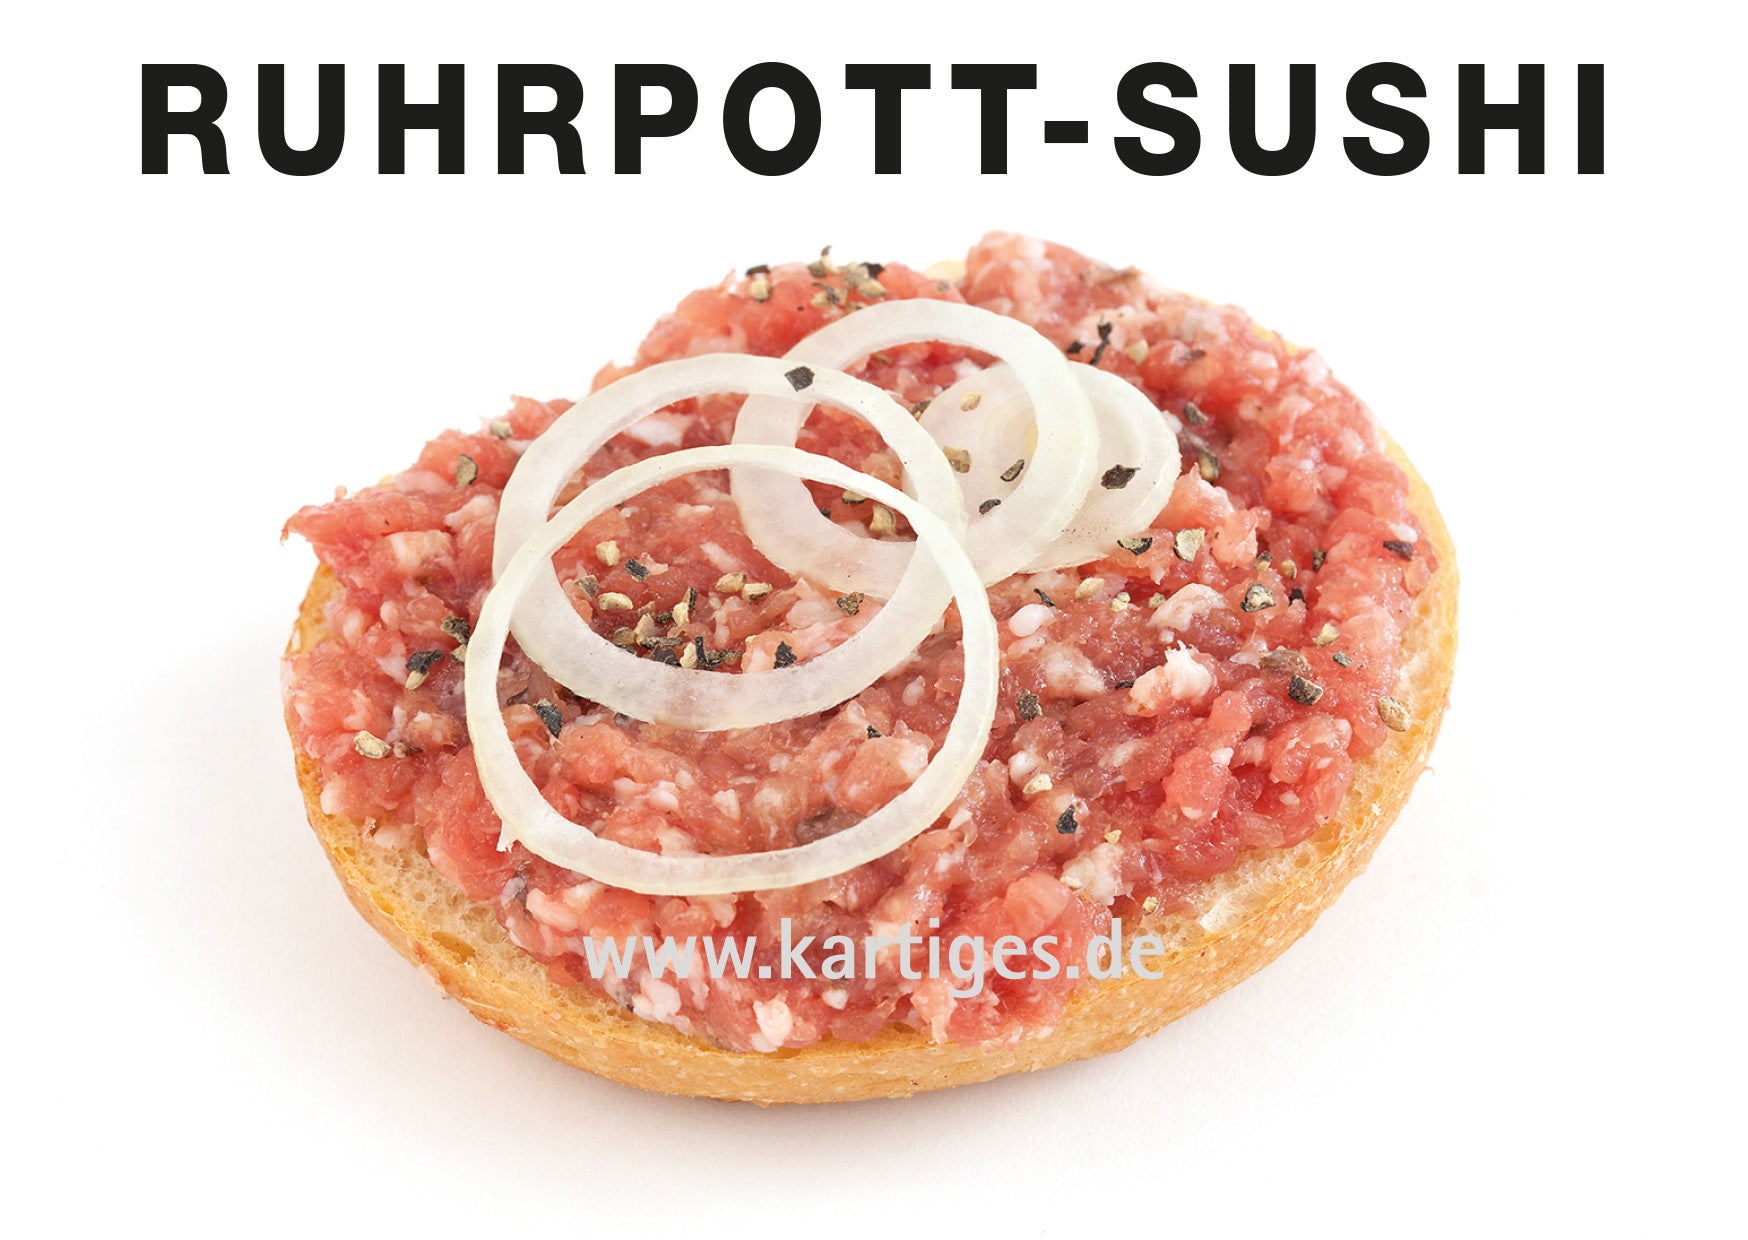 Ruhrpott-Sushi